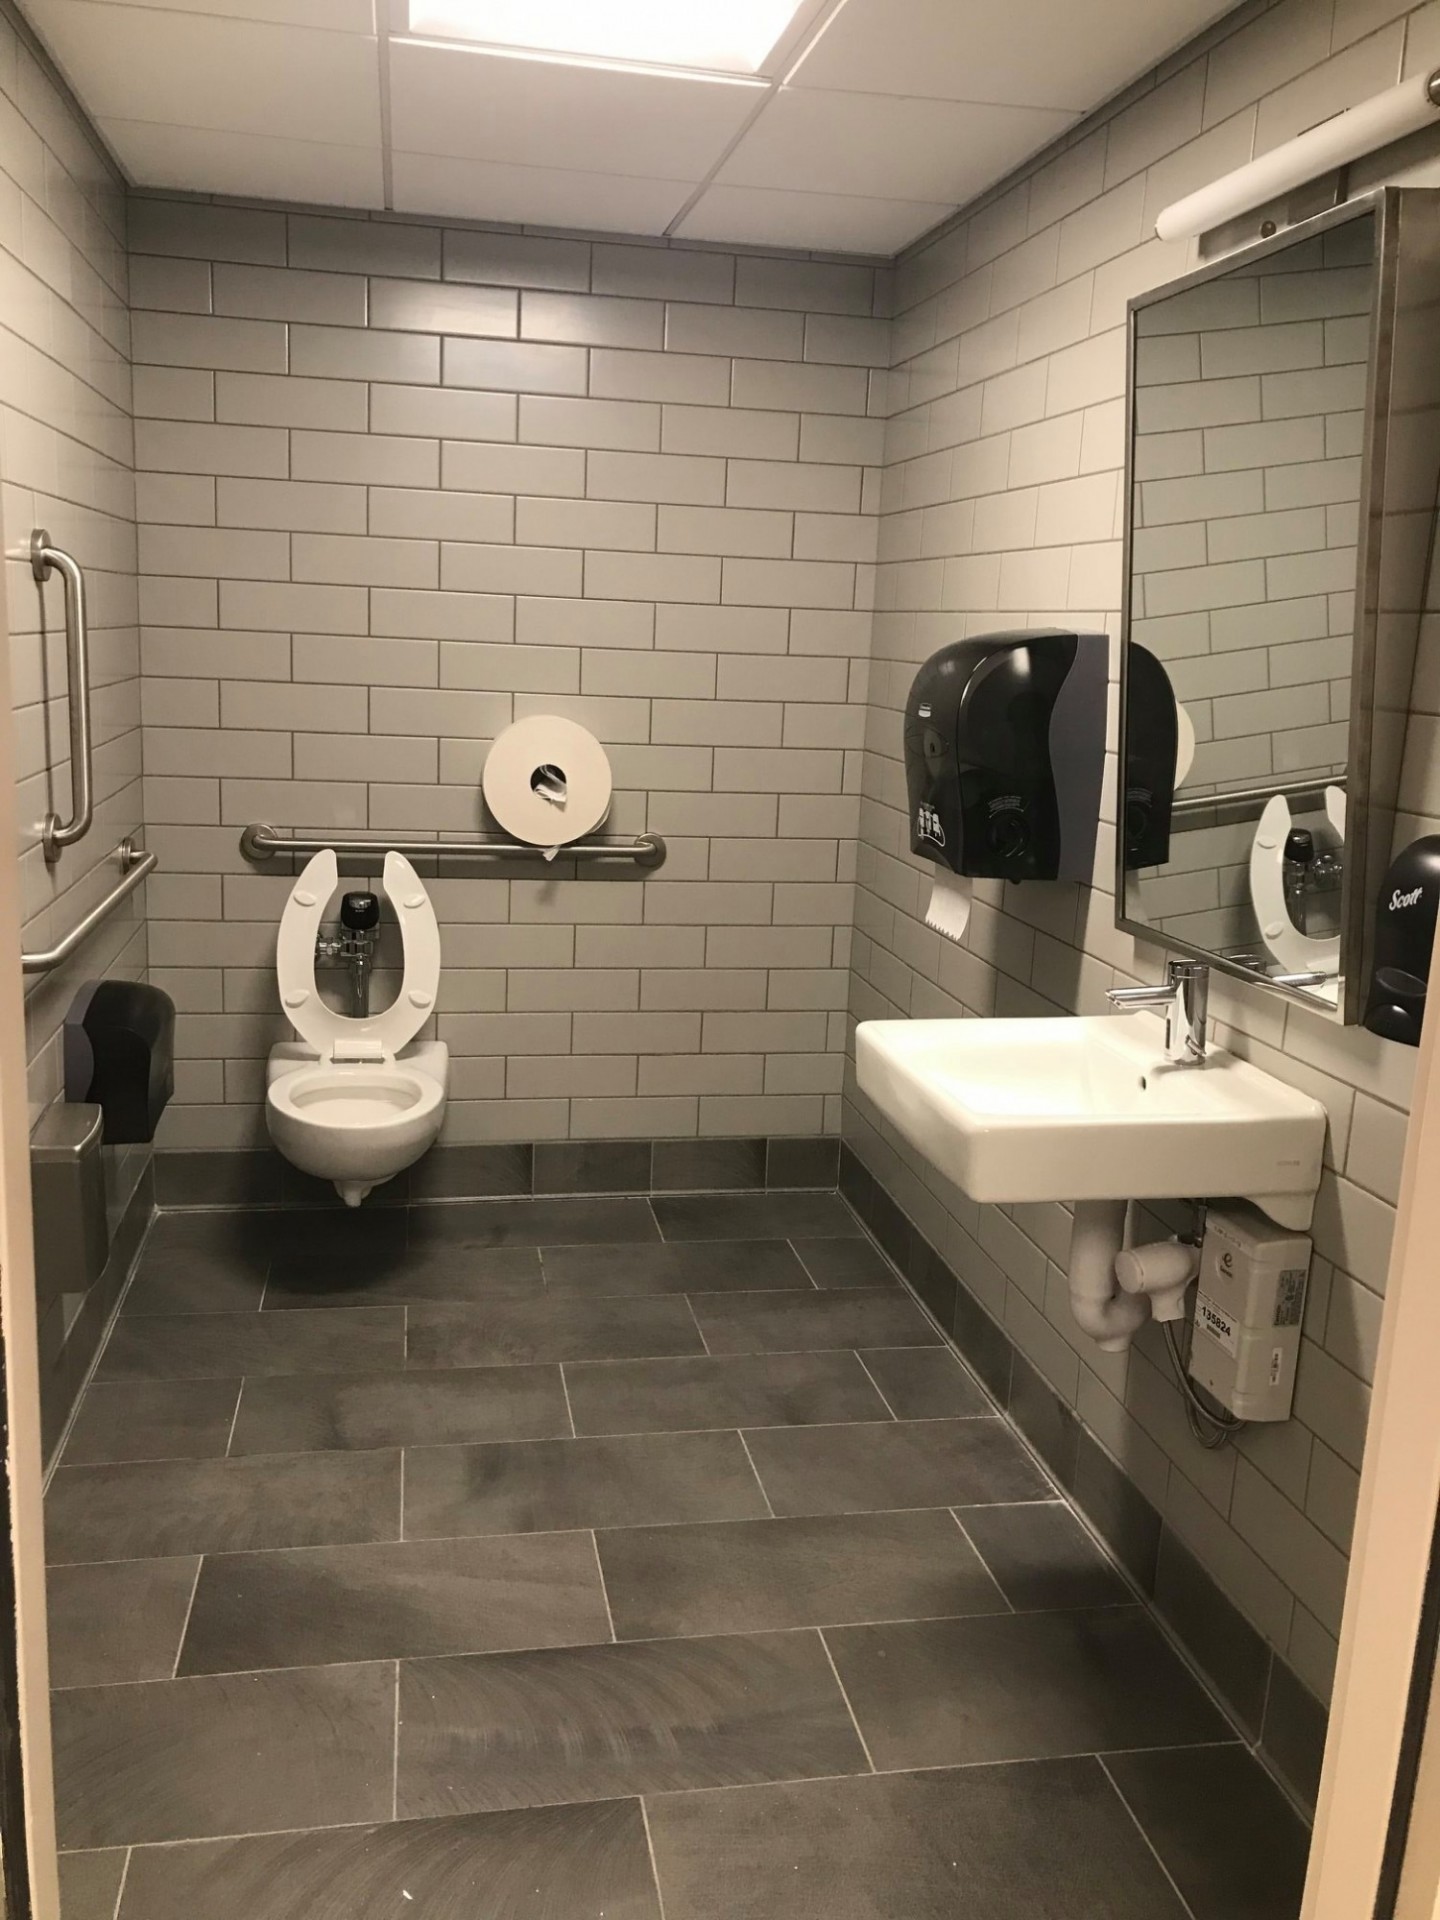 Gender-neutral, accessible restroom